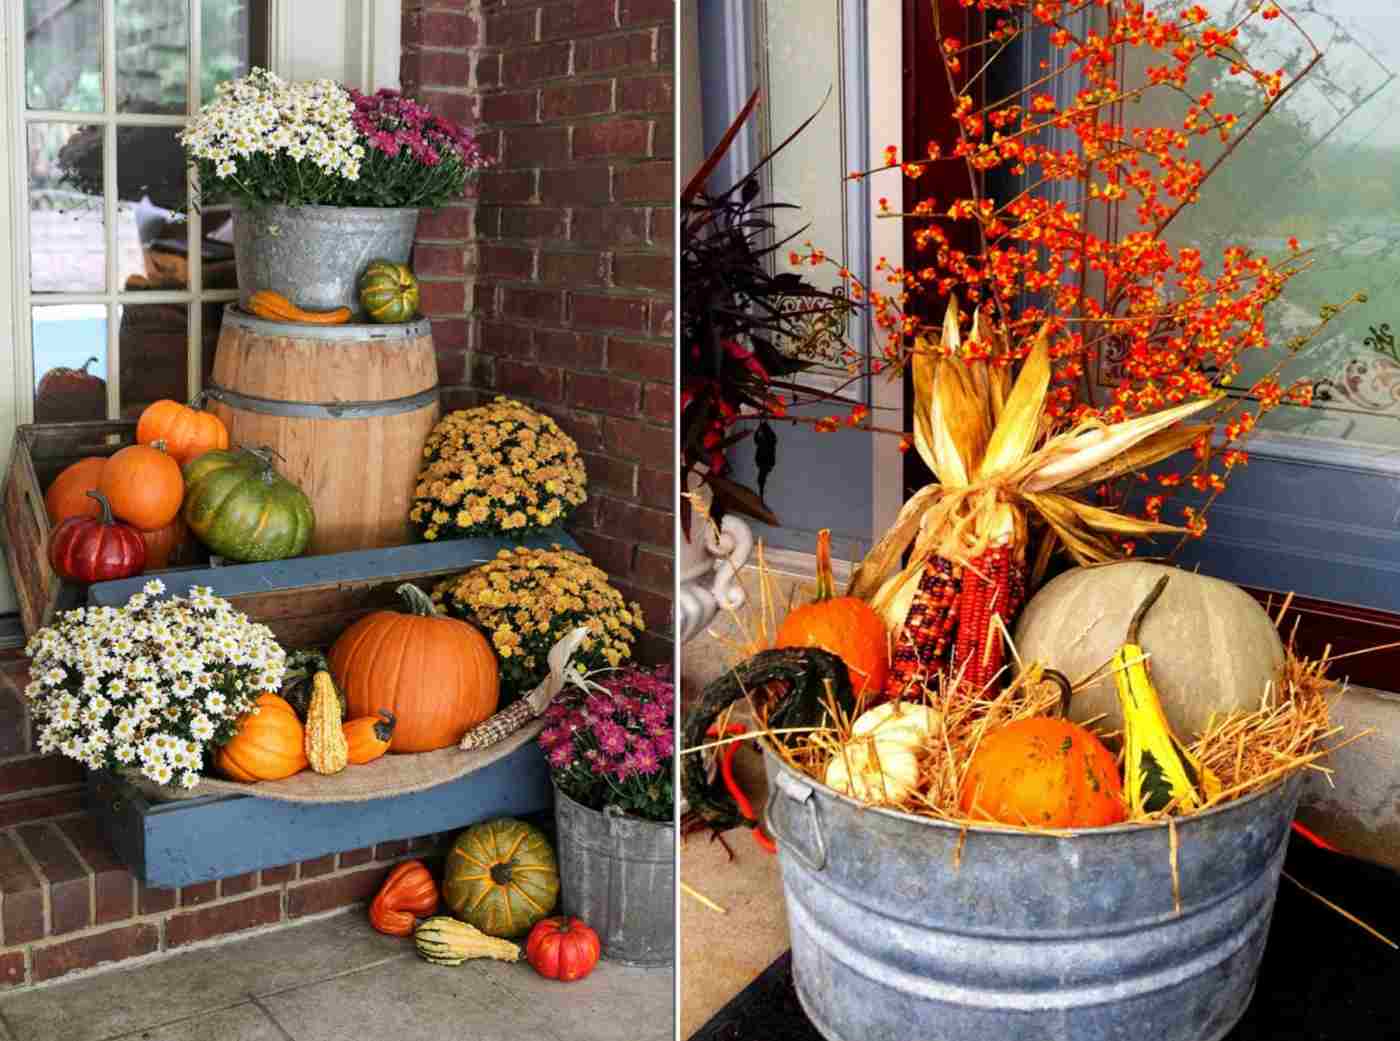 Gartendeko Herbst selber machen für Veranda und Eingansbereich in herbstlichen Farben